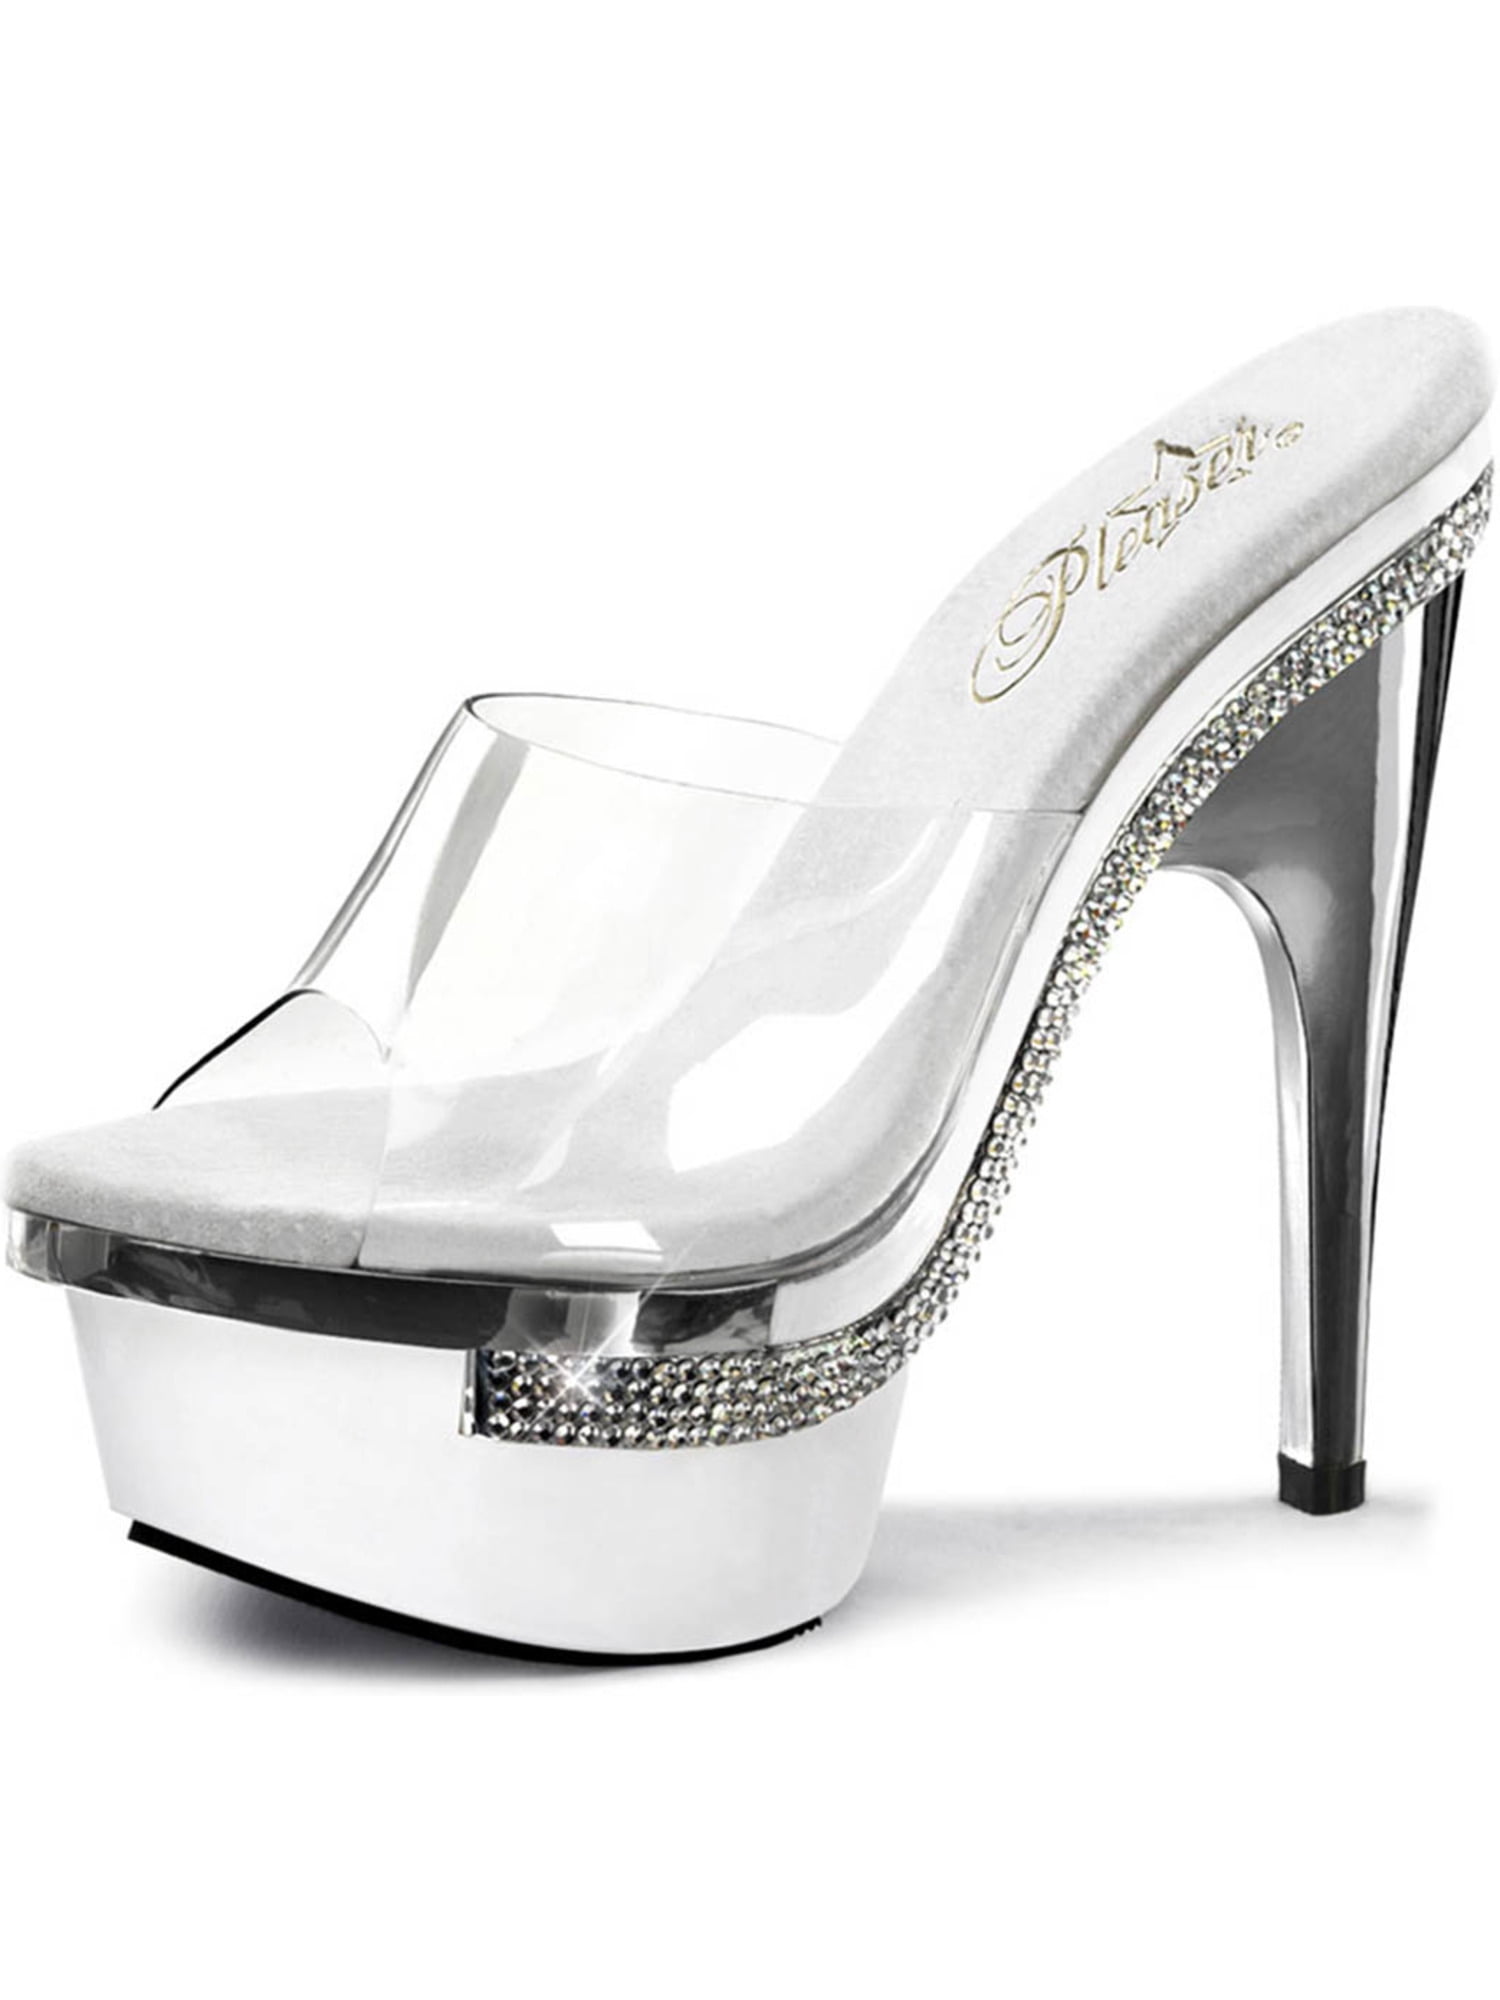 white 6 inch heels